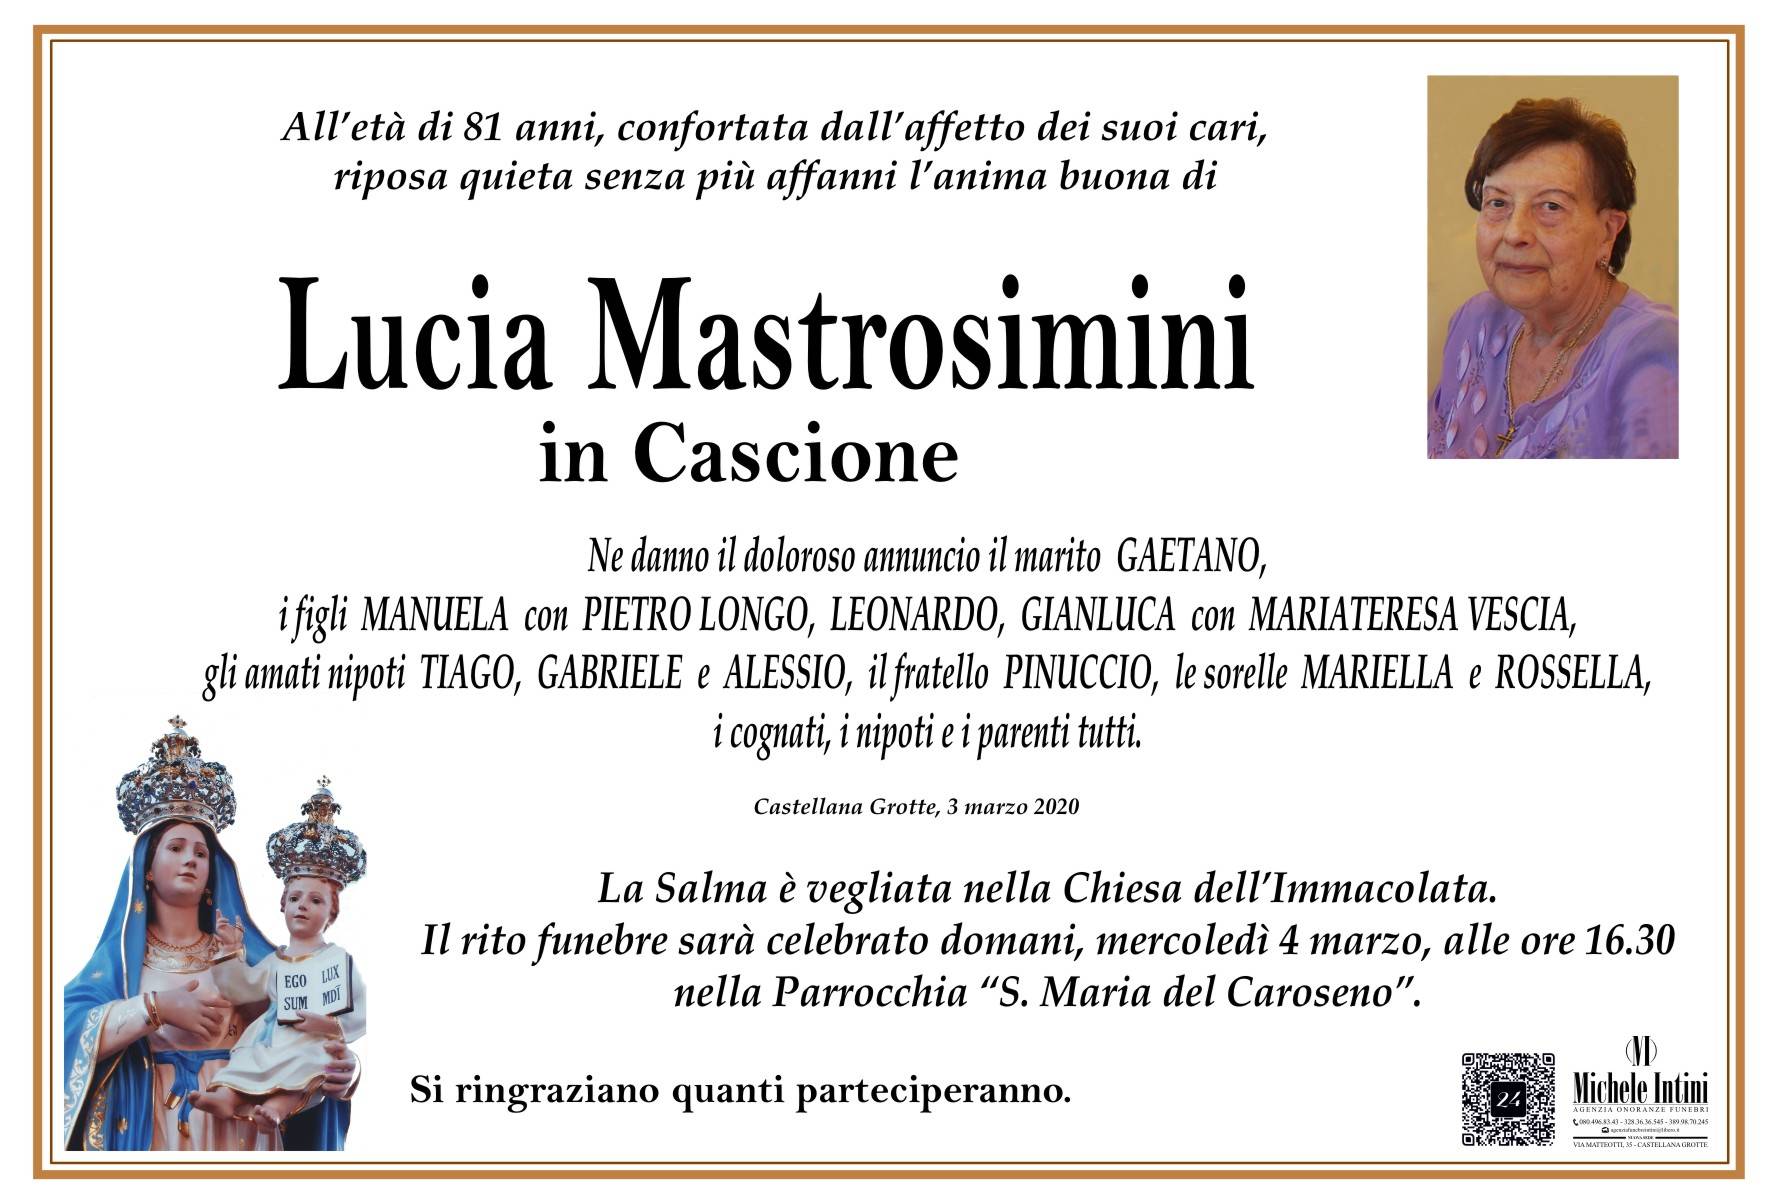 Lucia Mastrosimini